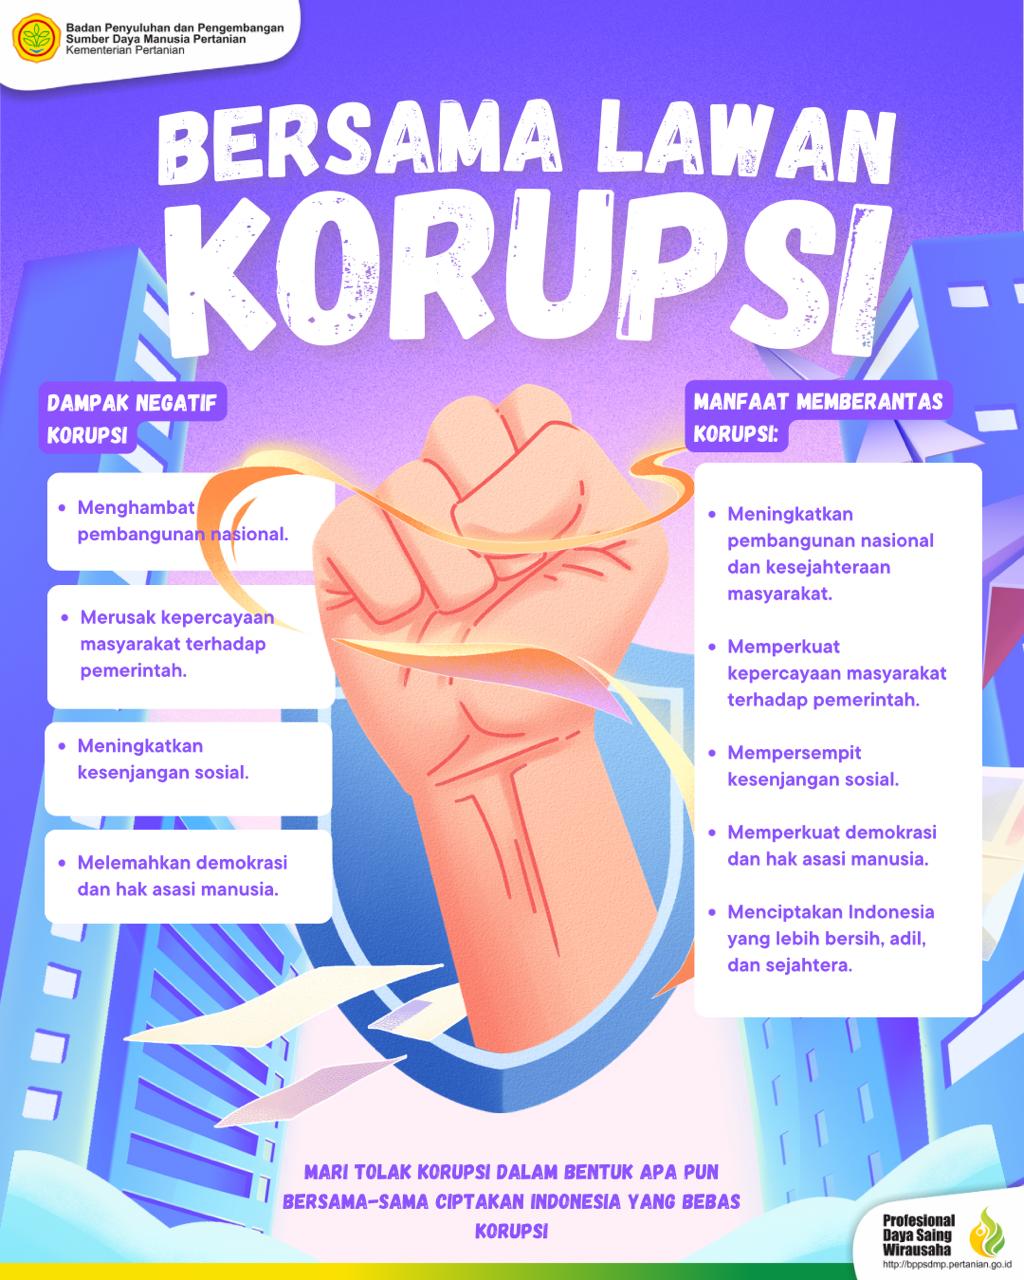 Galeri - Infografis, Bersama kita lawan korupsi!, Anti Korupsi